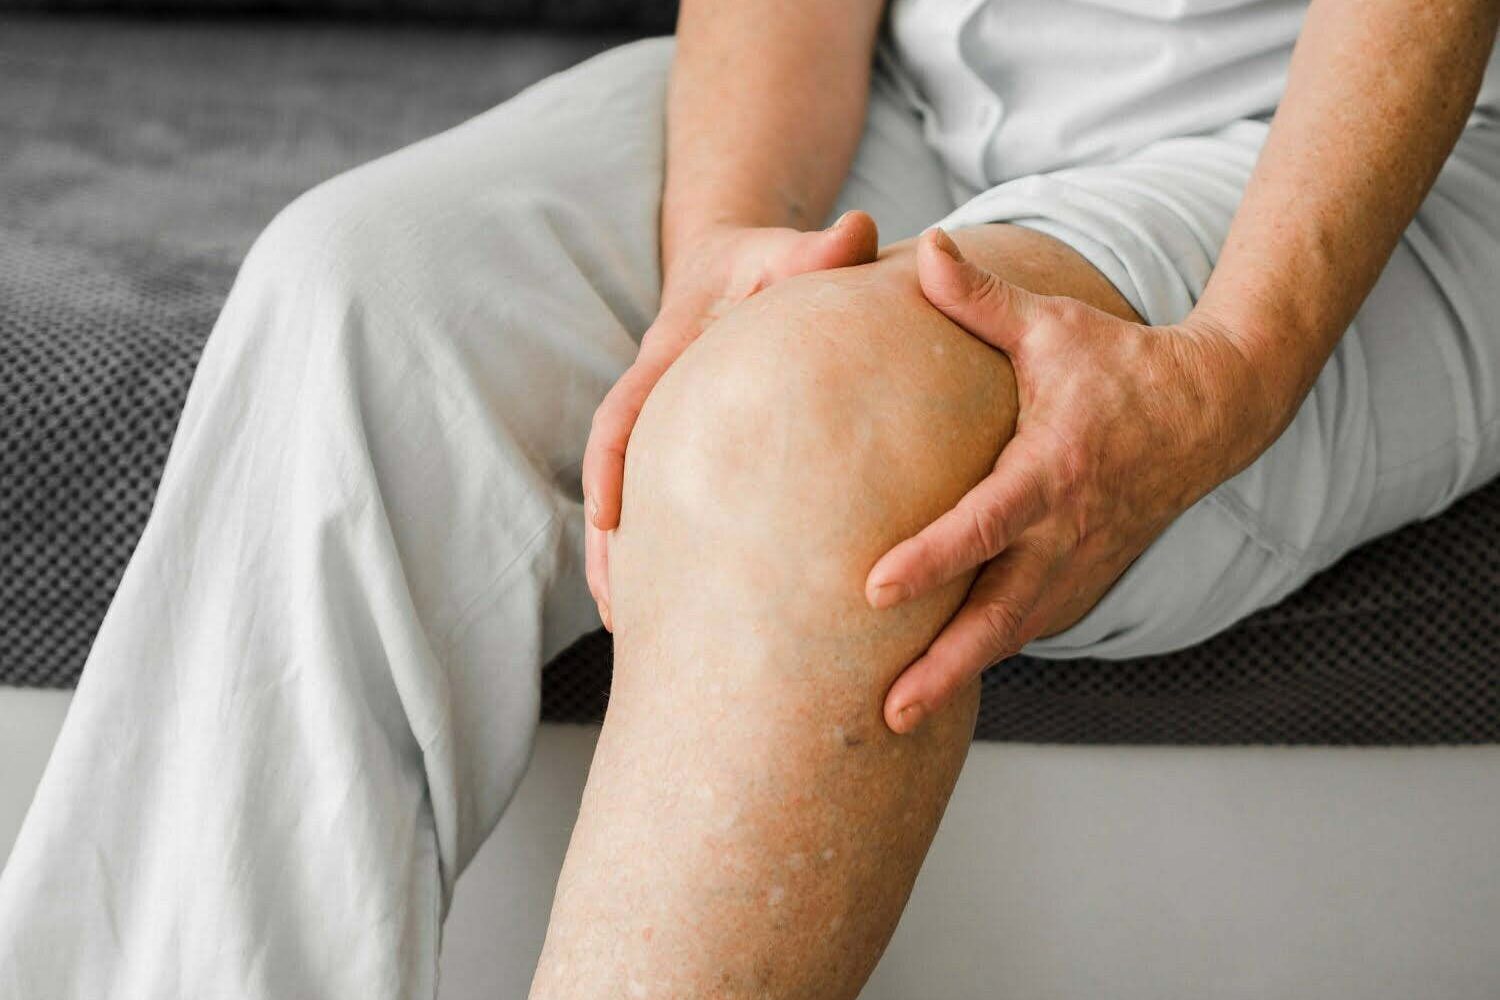 dolor en las rodillas / desgaste de rodillas - Cómo afecta la artritis a las rodillas: síntomas y tratamiento